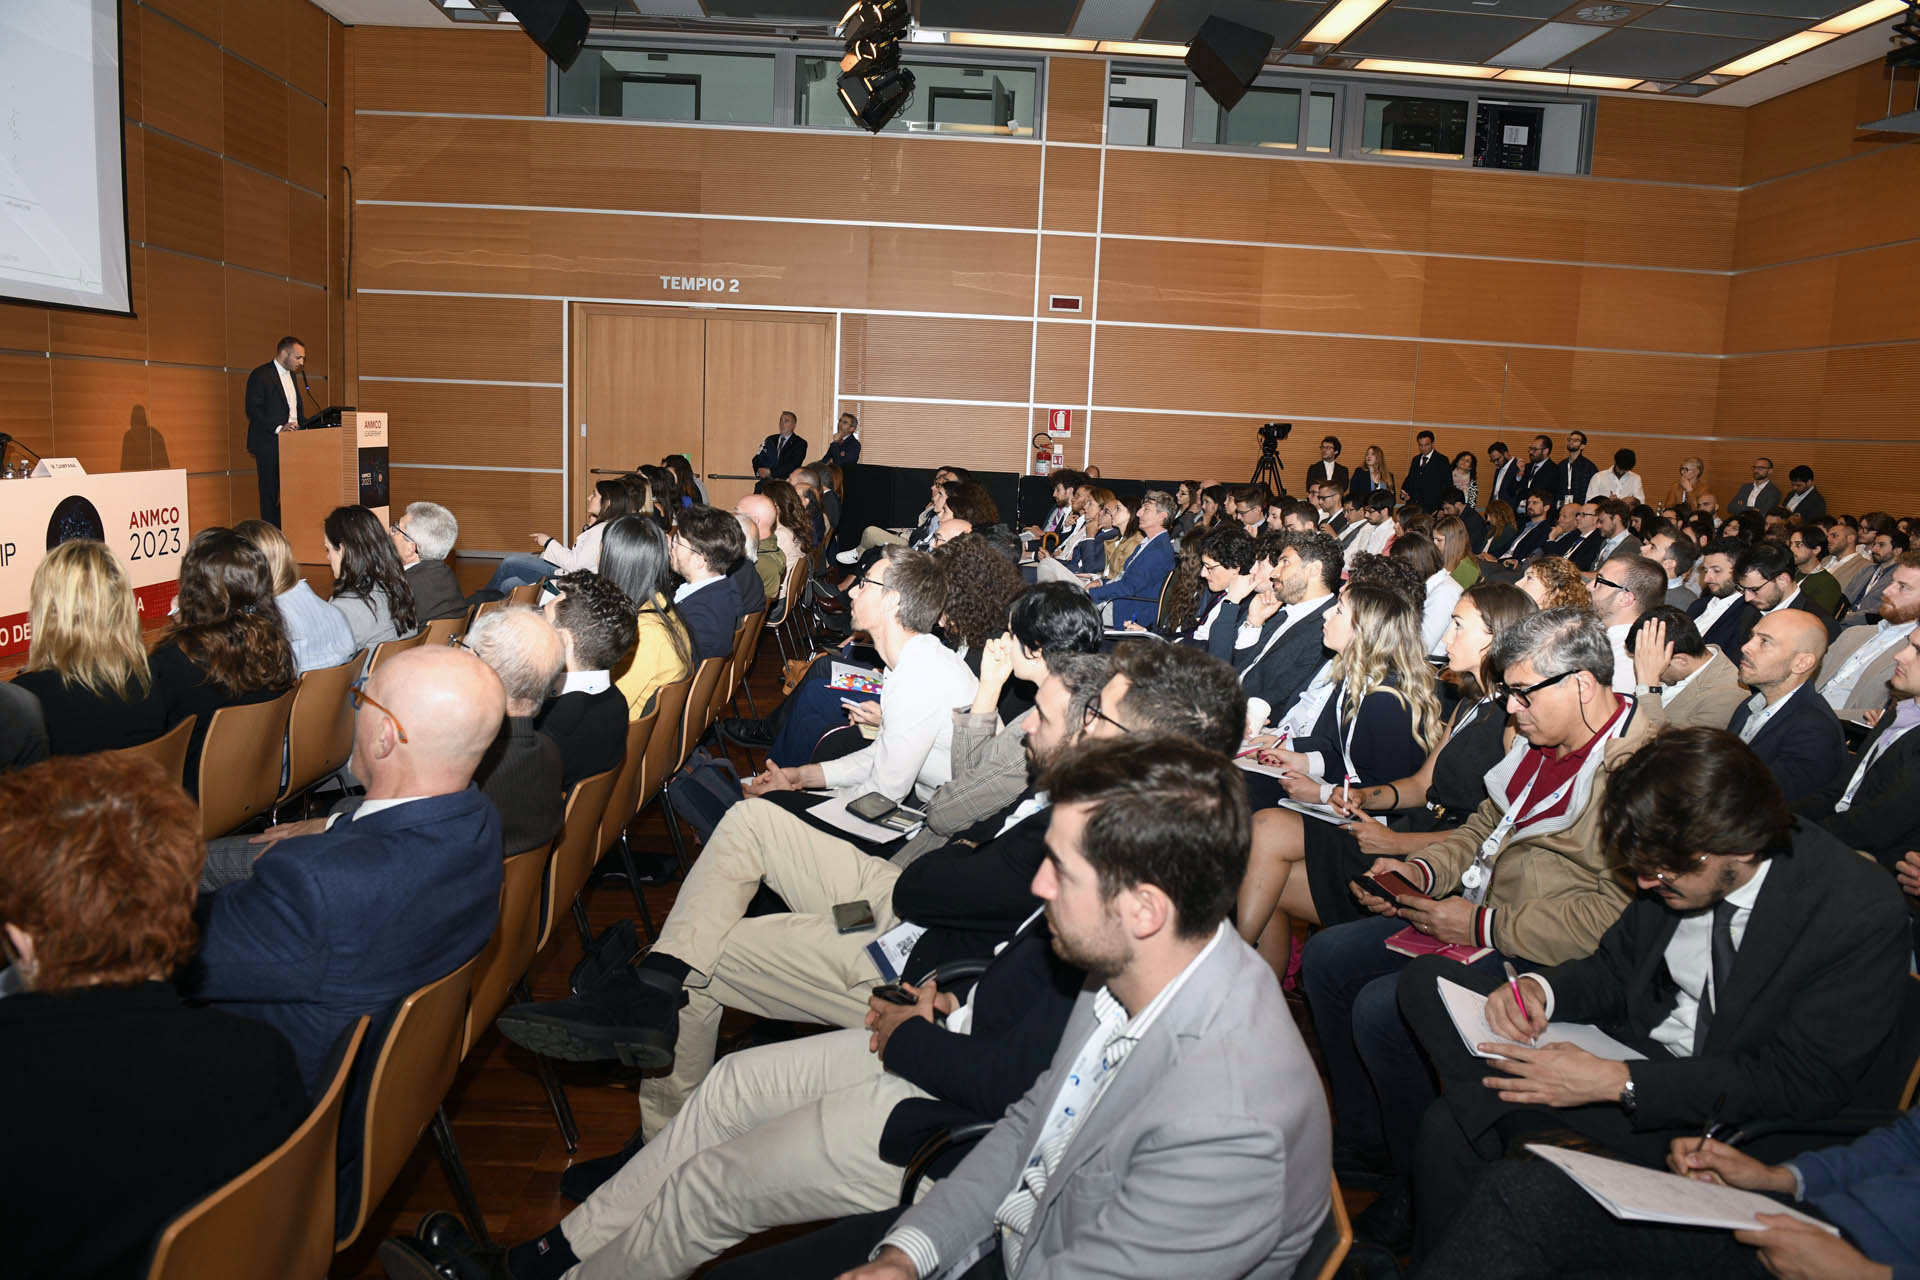 Dal 54° Congresso Nazionale ANMCO: grande successo per le iniziative innovative dedicate ai (giovani) Cardiologi italiani